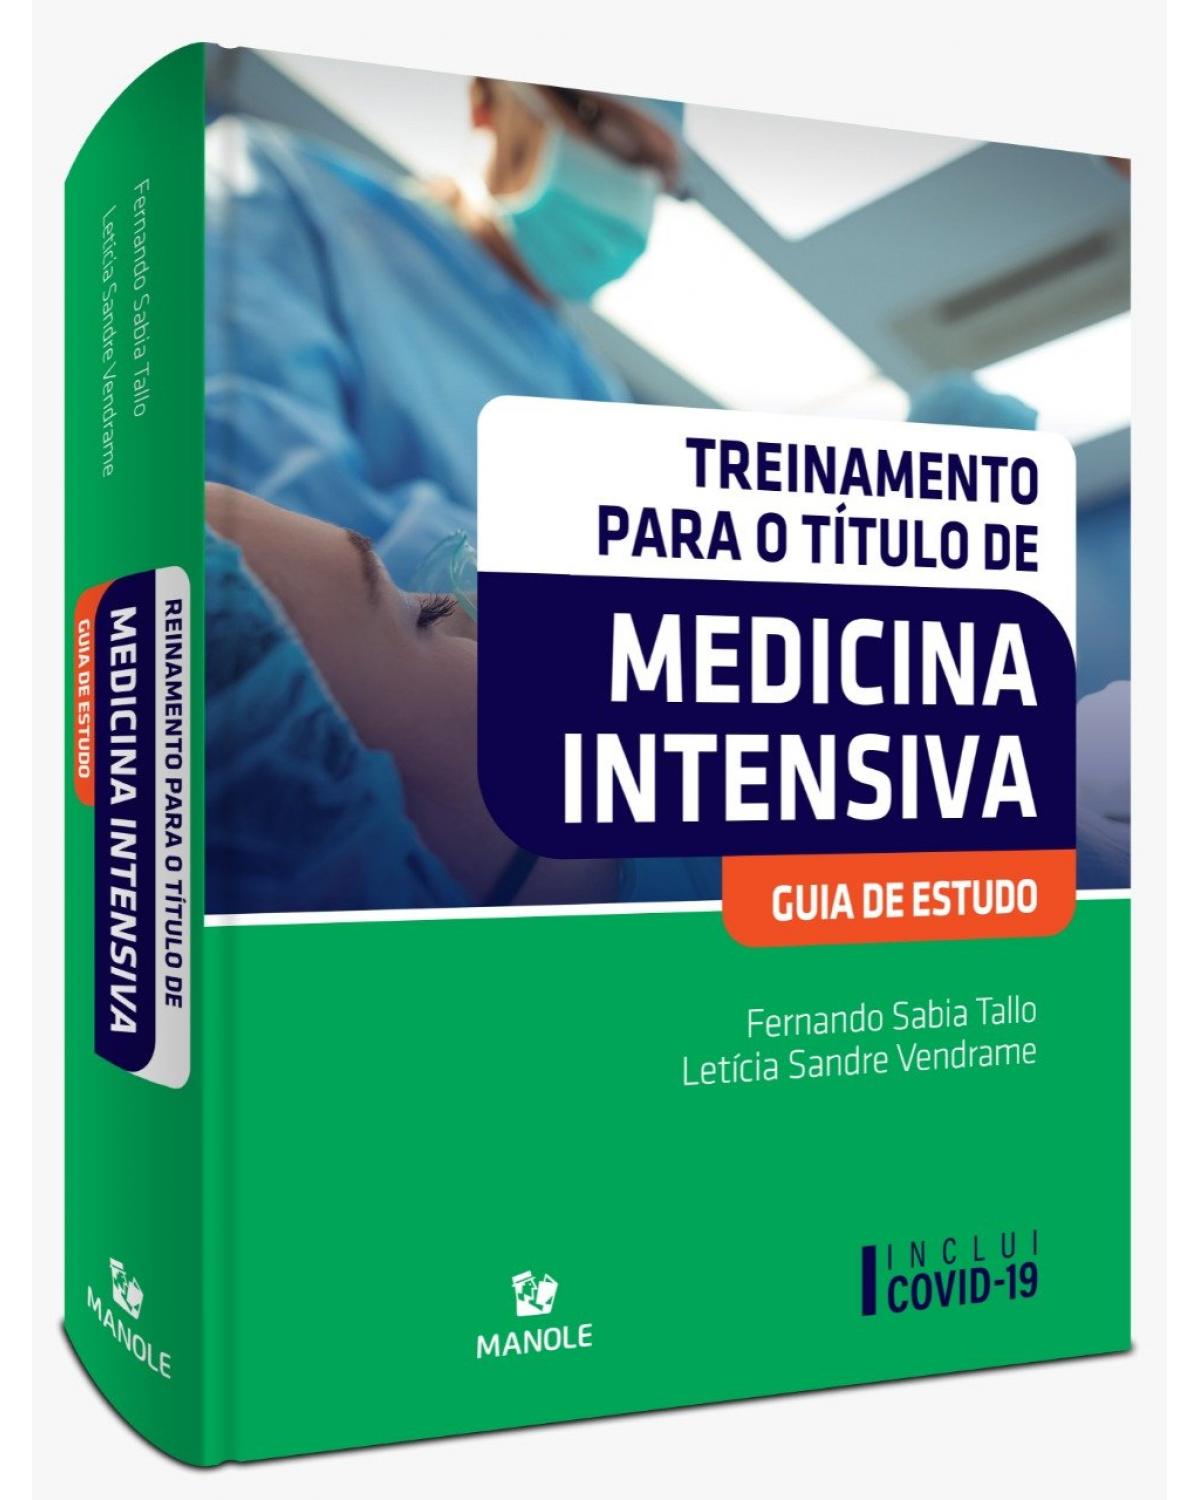 Treinamento para o título de medicina intensiva - guia de estudo - 1ª Edição | 2021